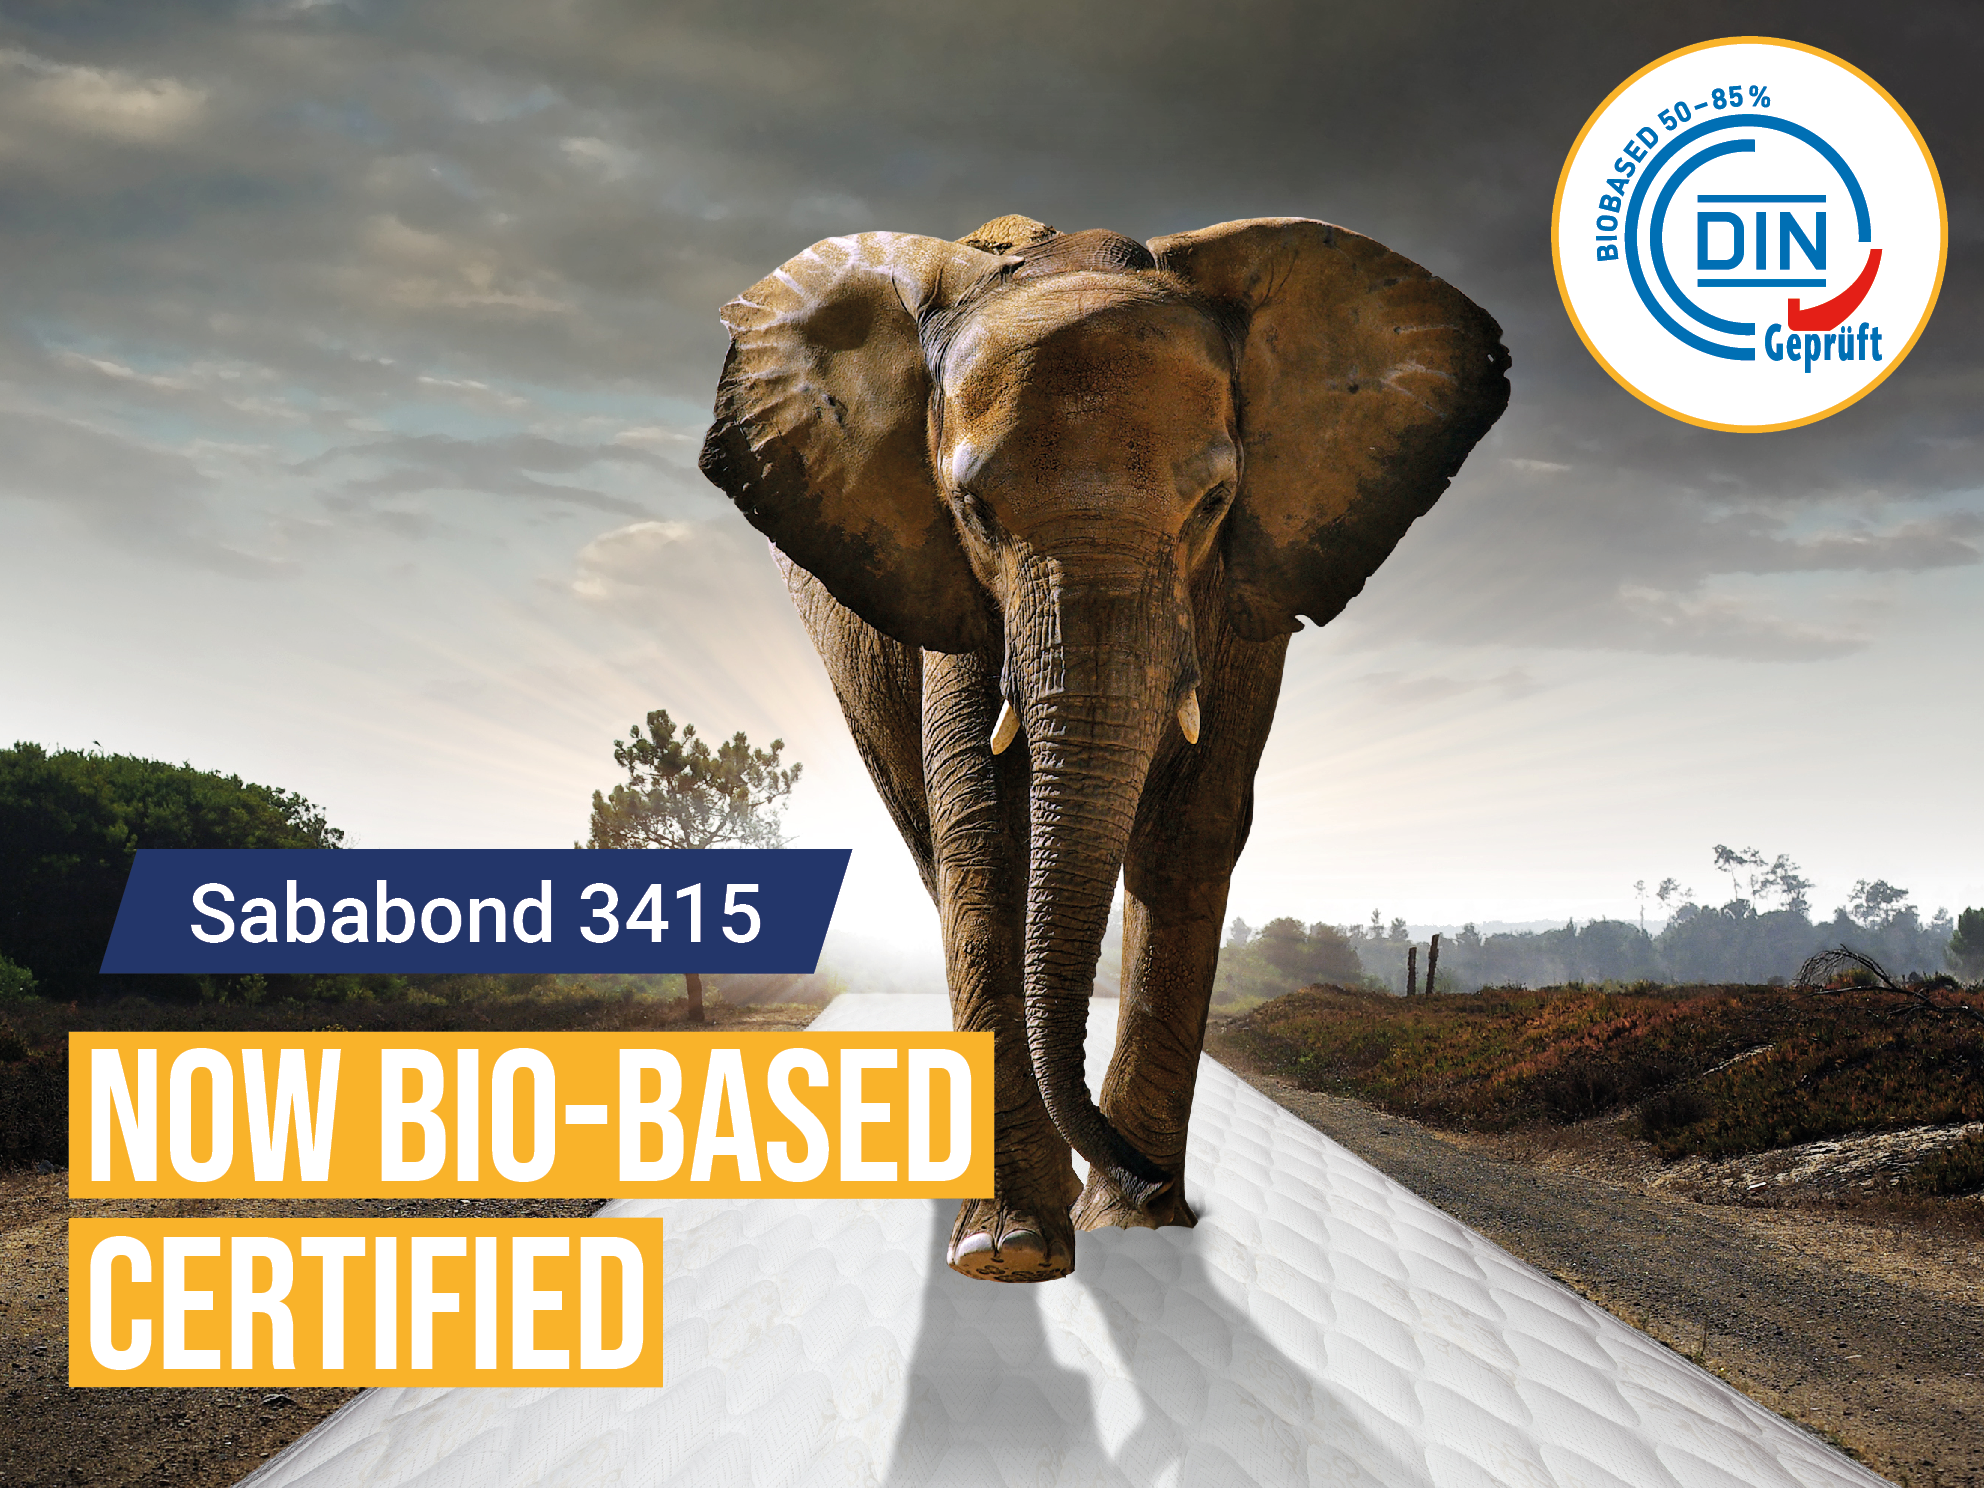 Sababond 3415 is nu officieel bio-based gecertificeerd! 💚